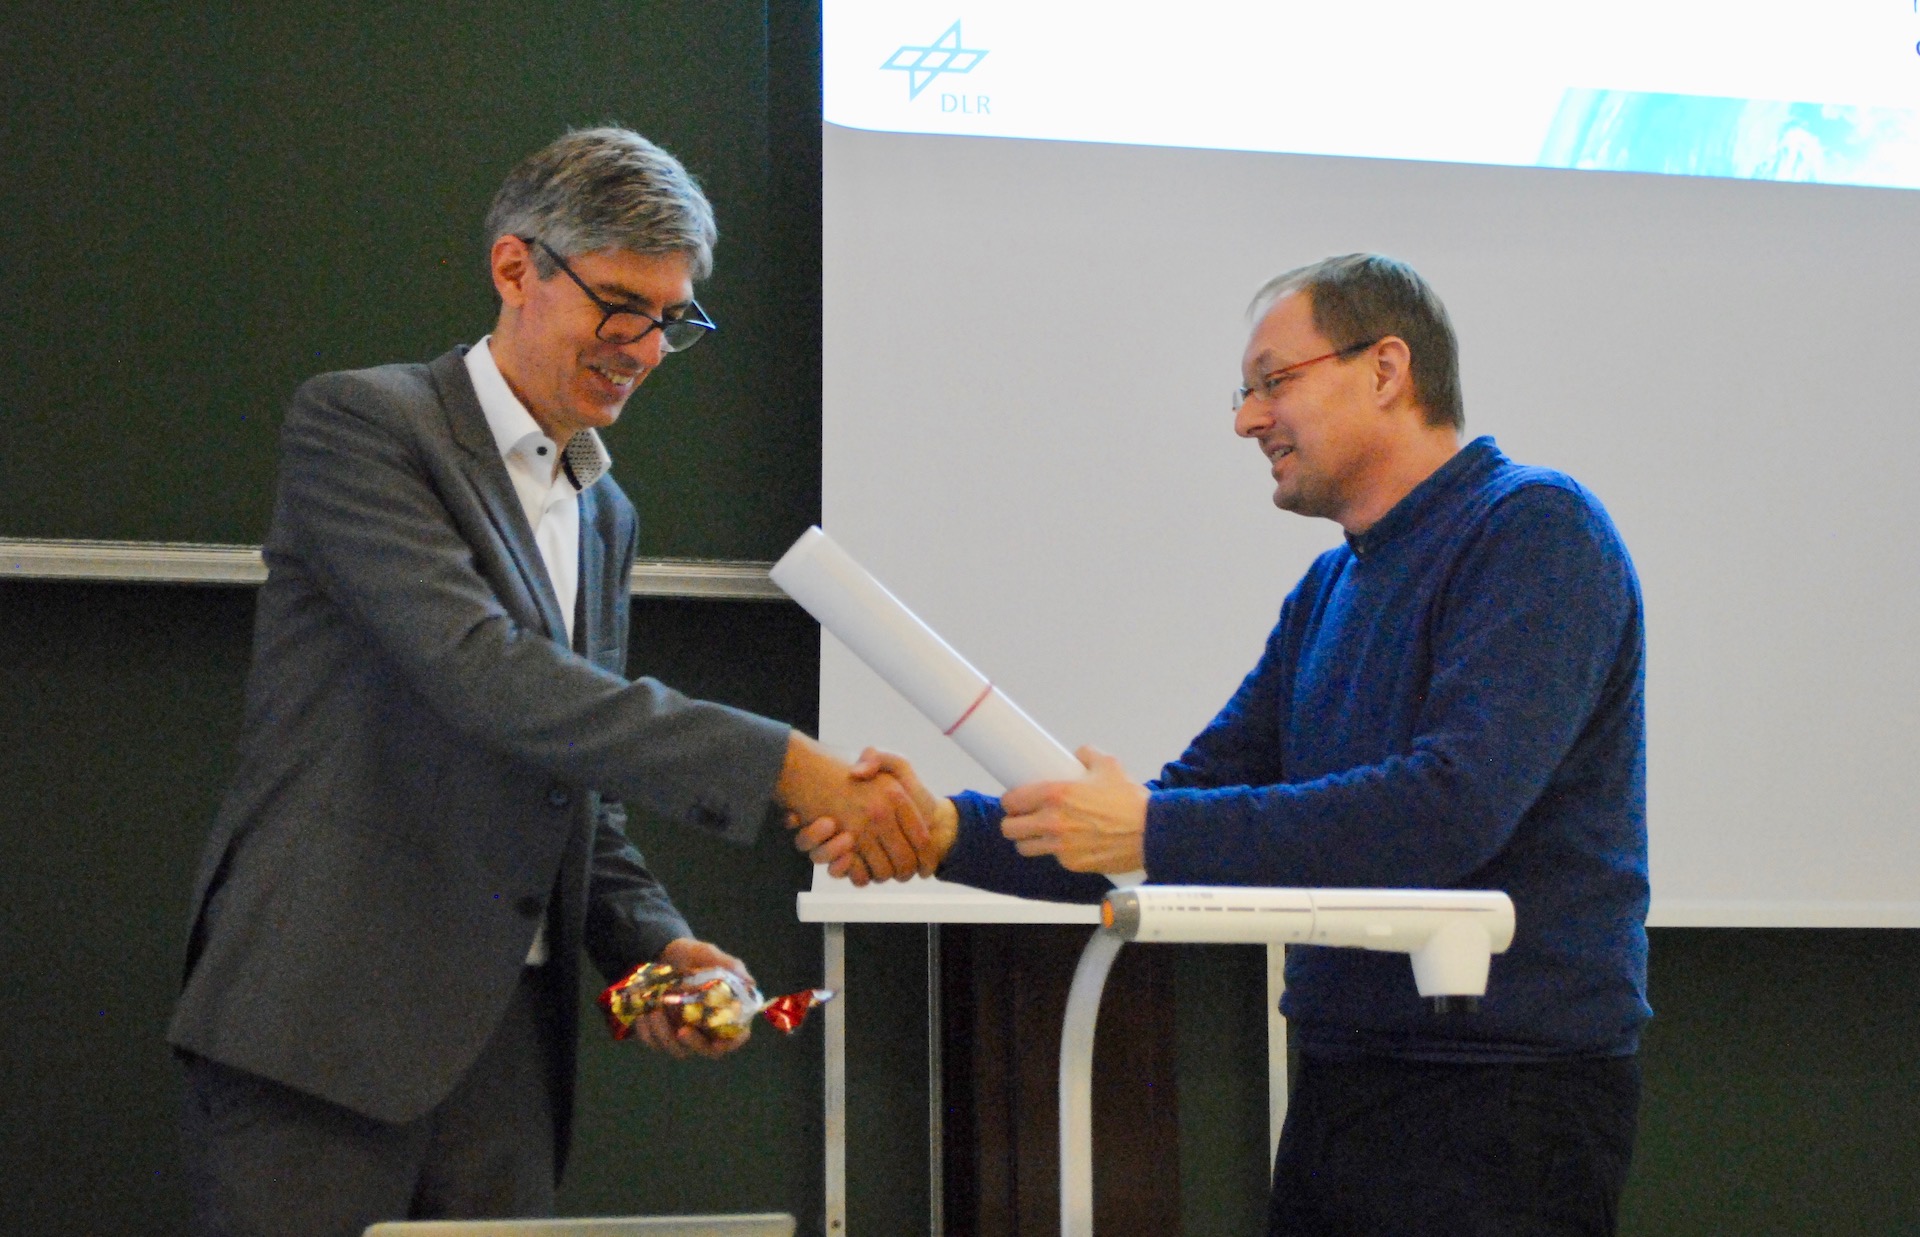 Professor Albu-Schäffer is thanked